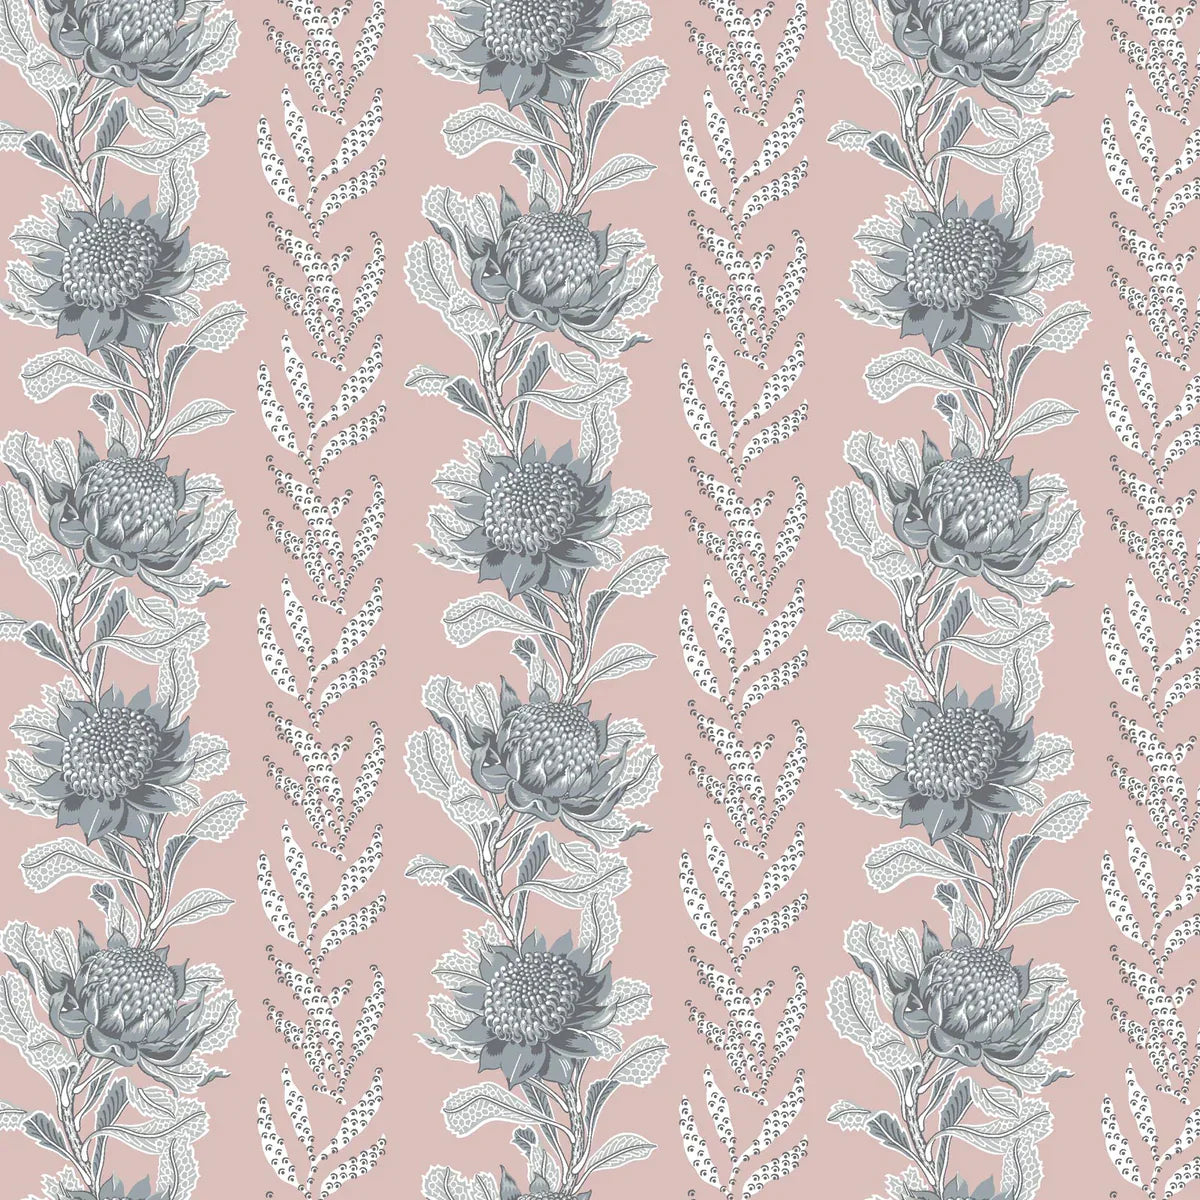 Imperial Waratah Wallpaper - Pink